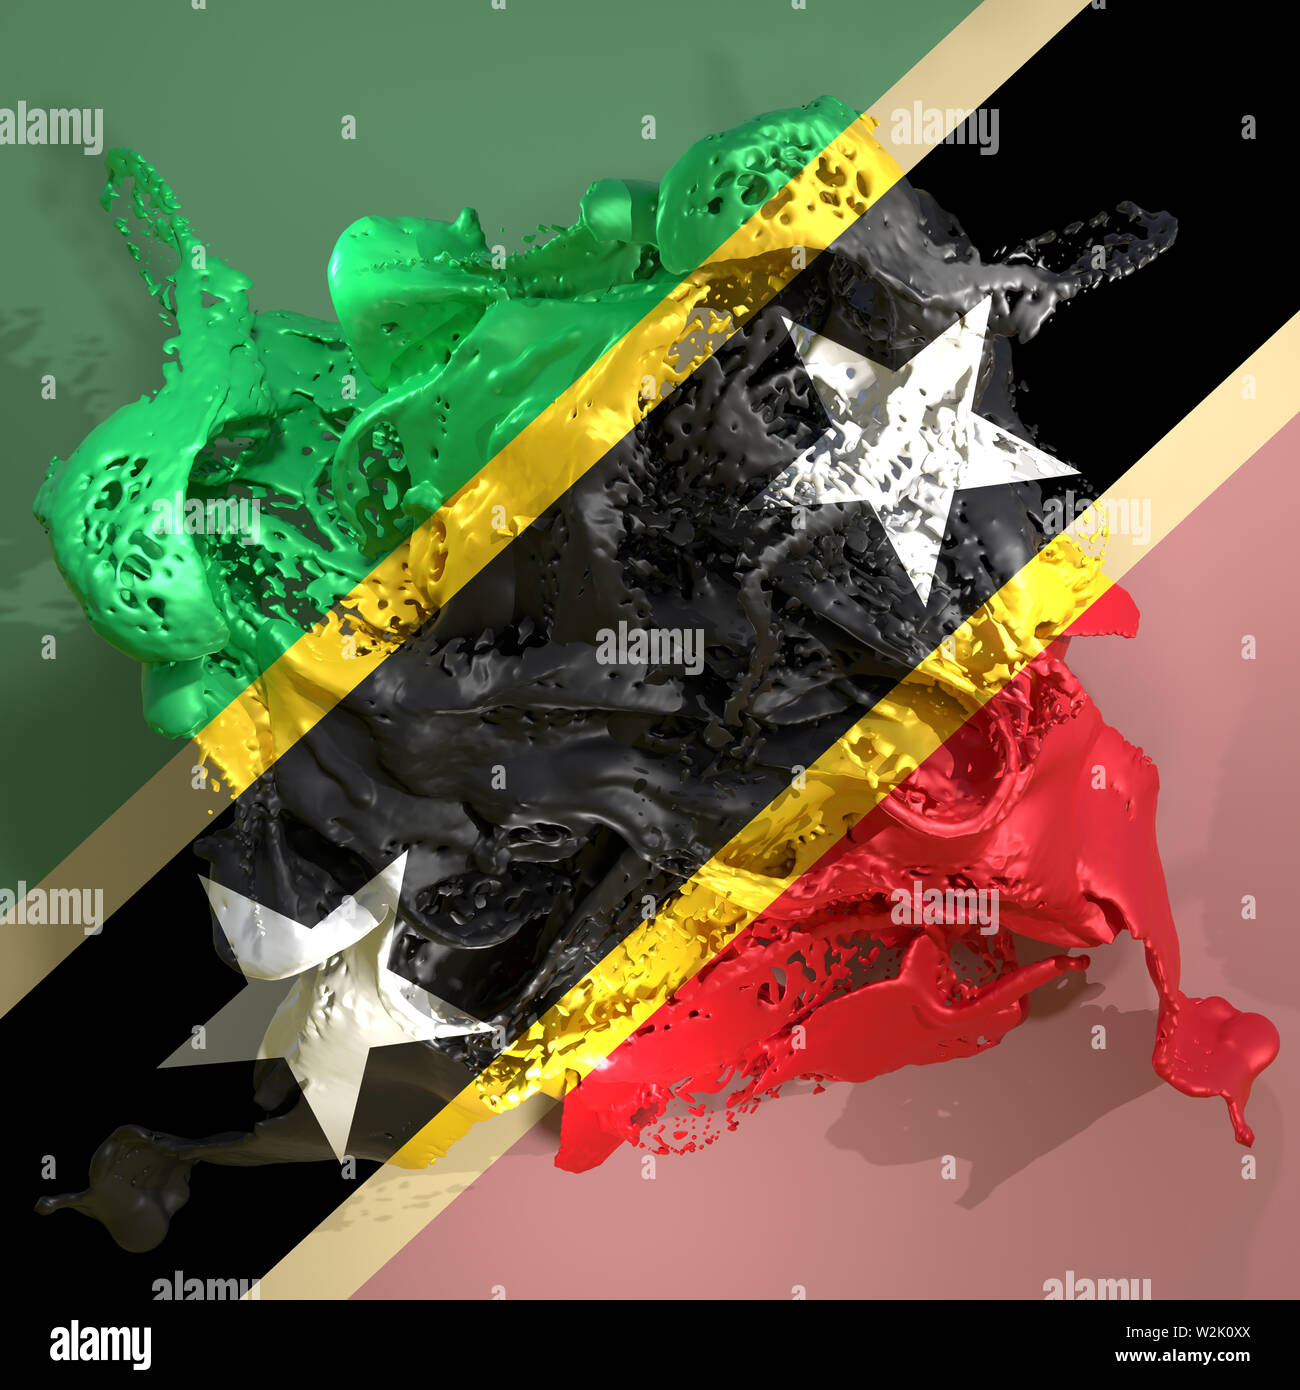 3D-Rendering für eine Saint Christopher und Nevis land Flagge in einer Flüssigkeit Flüssigkeit. Stockfoto